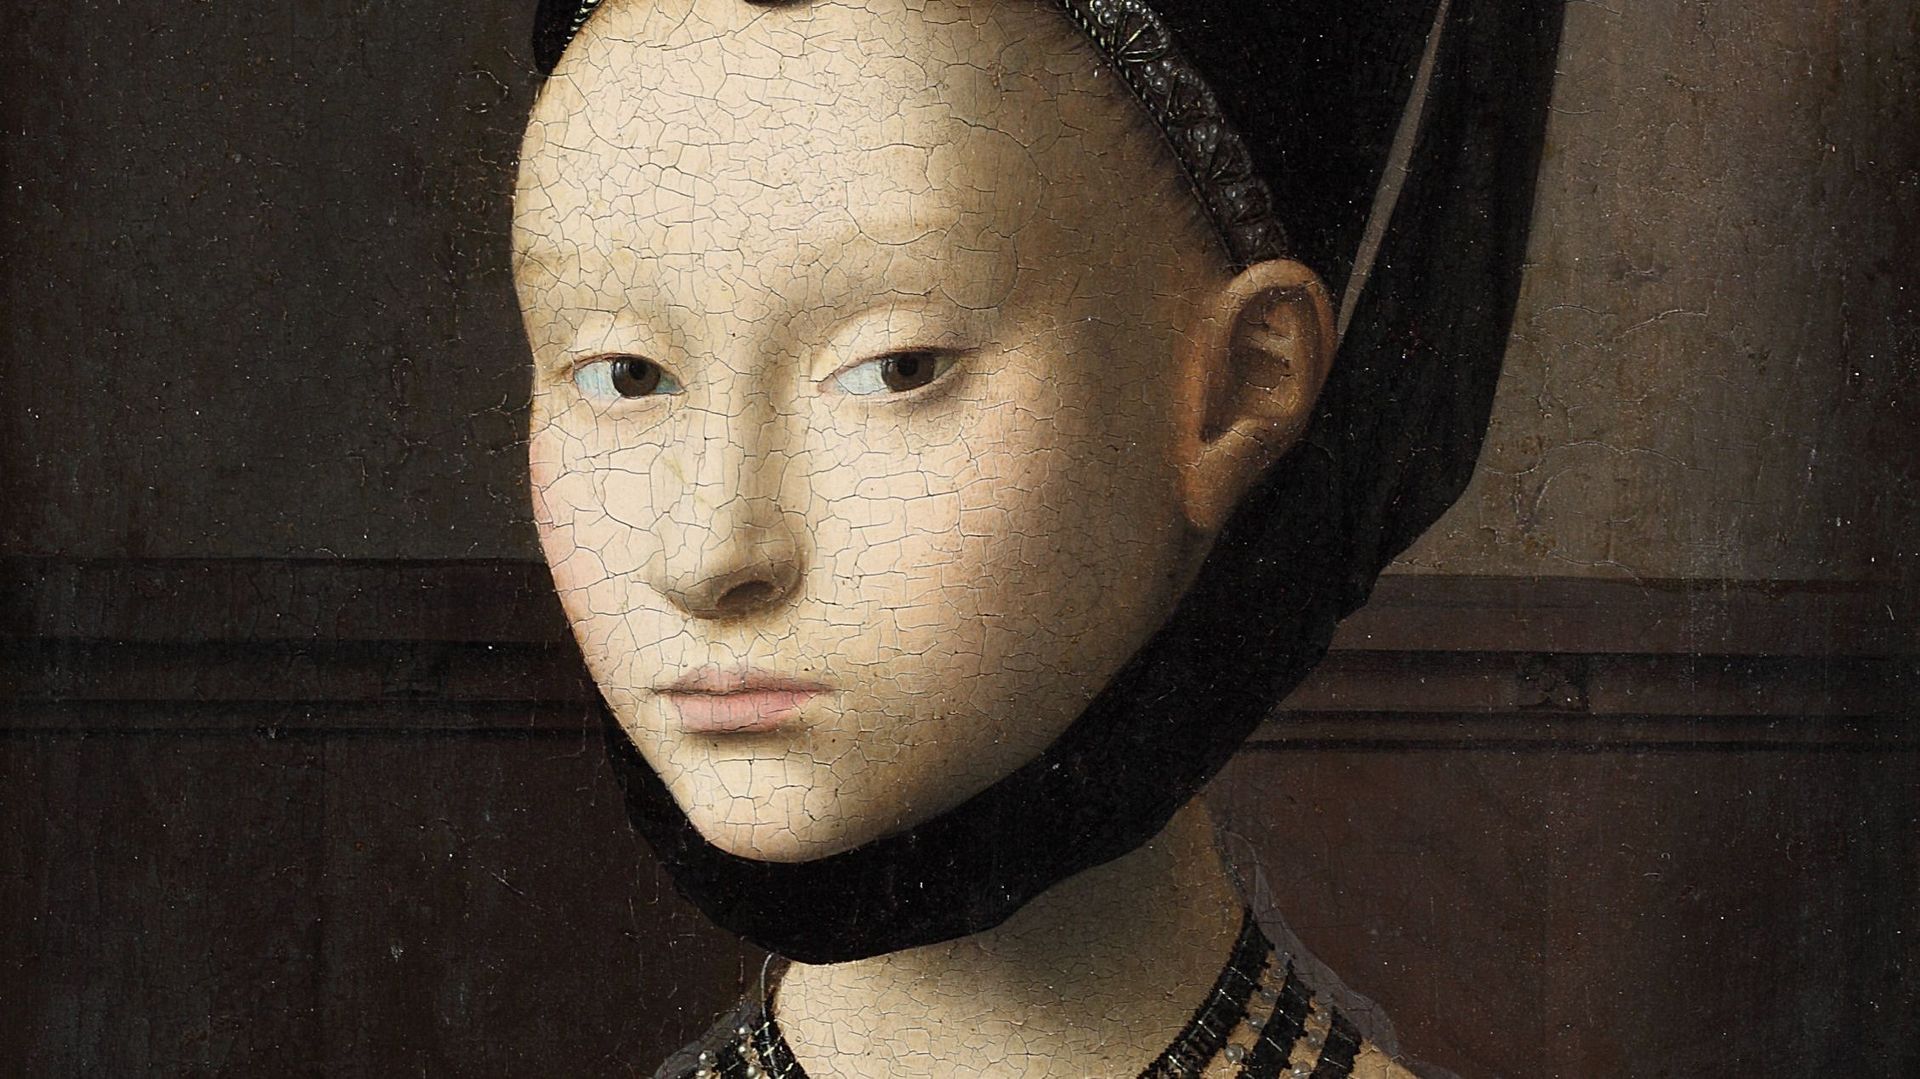 Petrus Christus, "Portret van een jonge vrouw", ca. 1470. Gemäldegalerie der Staatlichen Museen zu Berlin